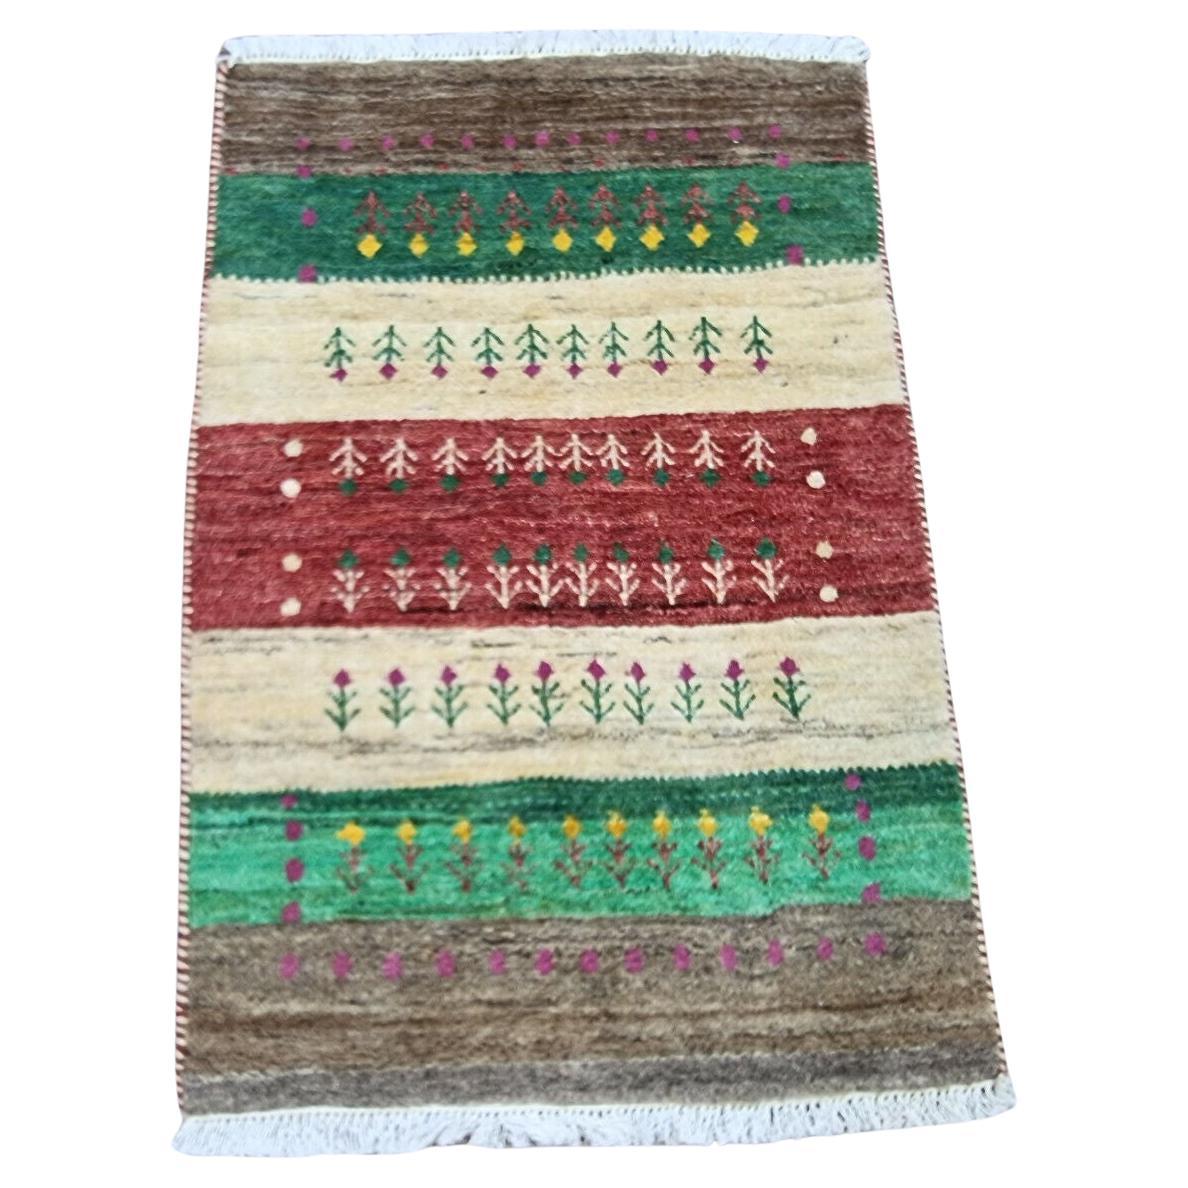 Handgefertigter Gabbeh-Teppich im persischen Stil 2' x 3', 1980er Jahre - 1D120